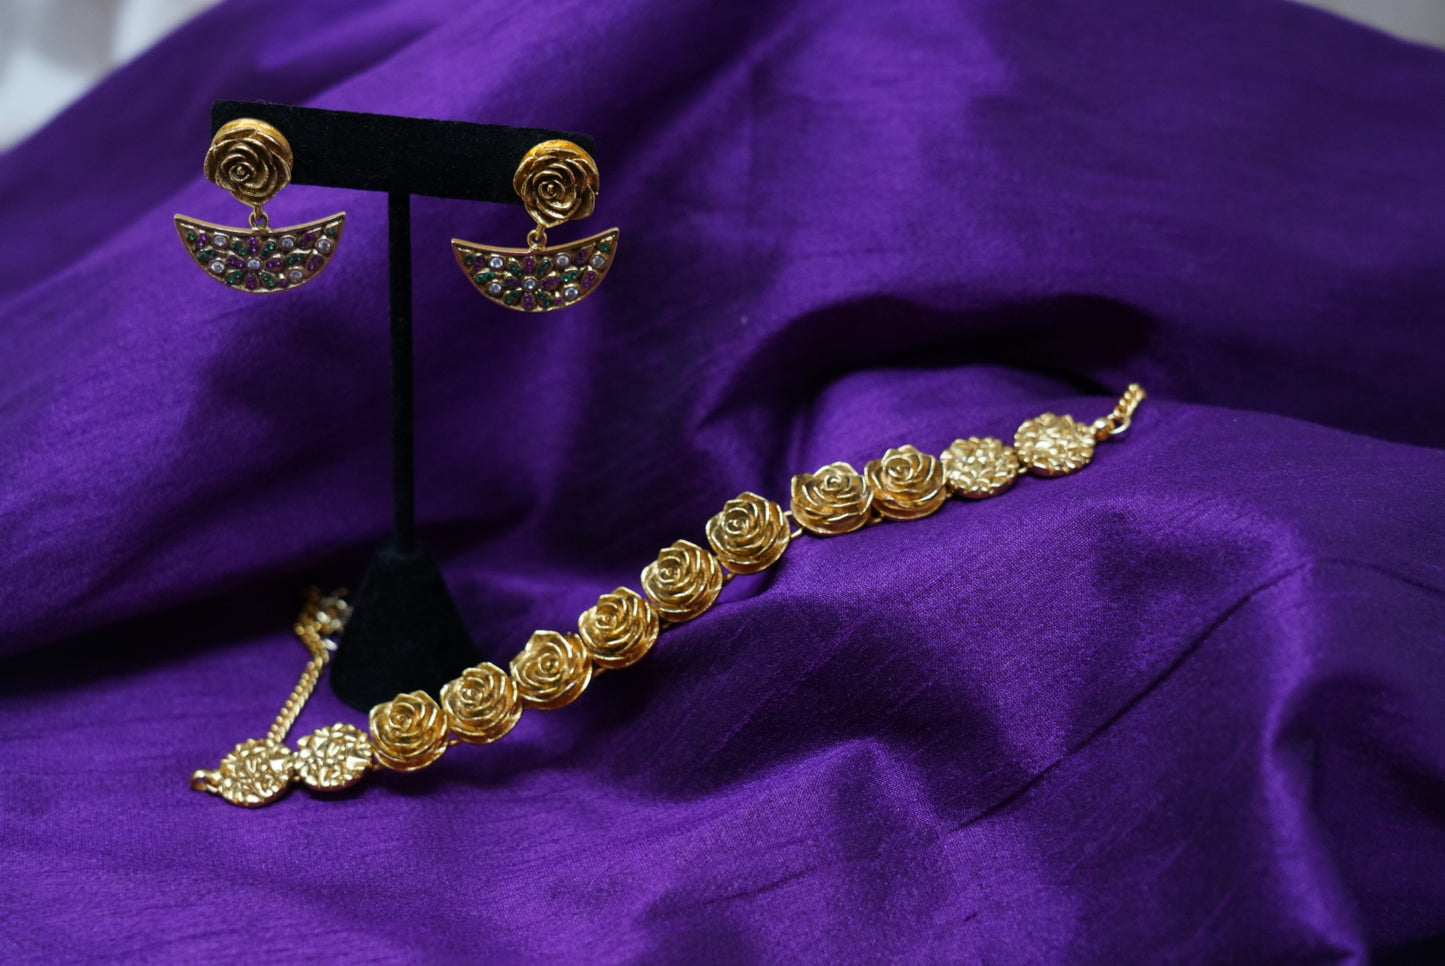 Matte Finish Rose Designed Golden Necklace